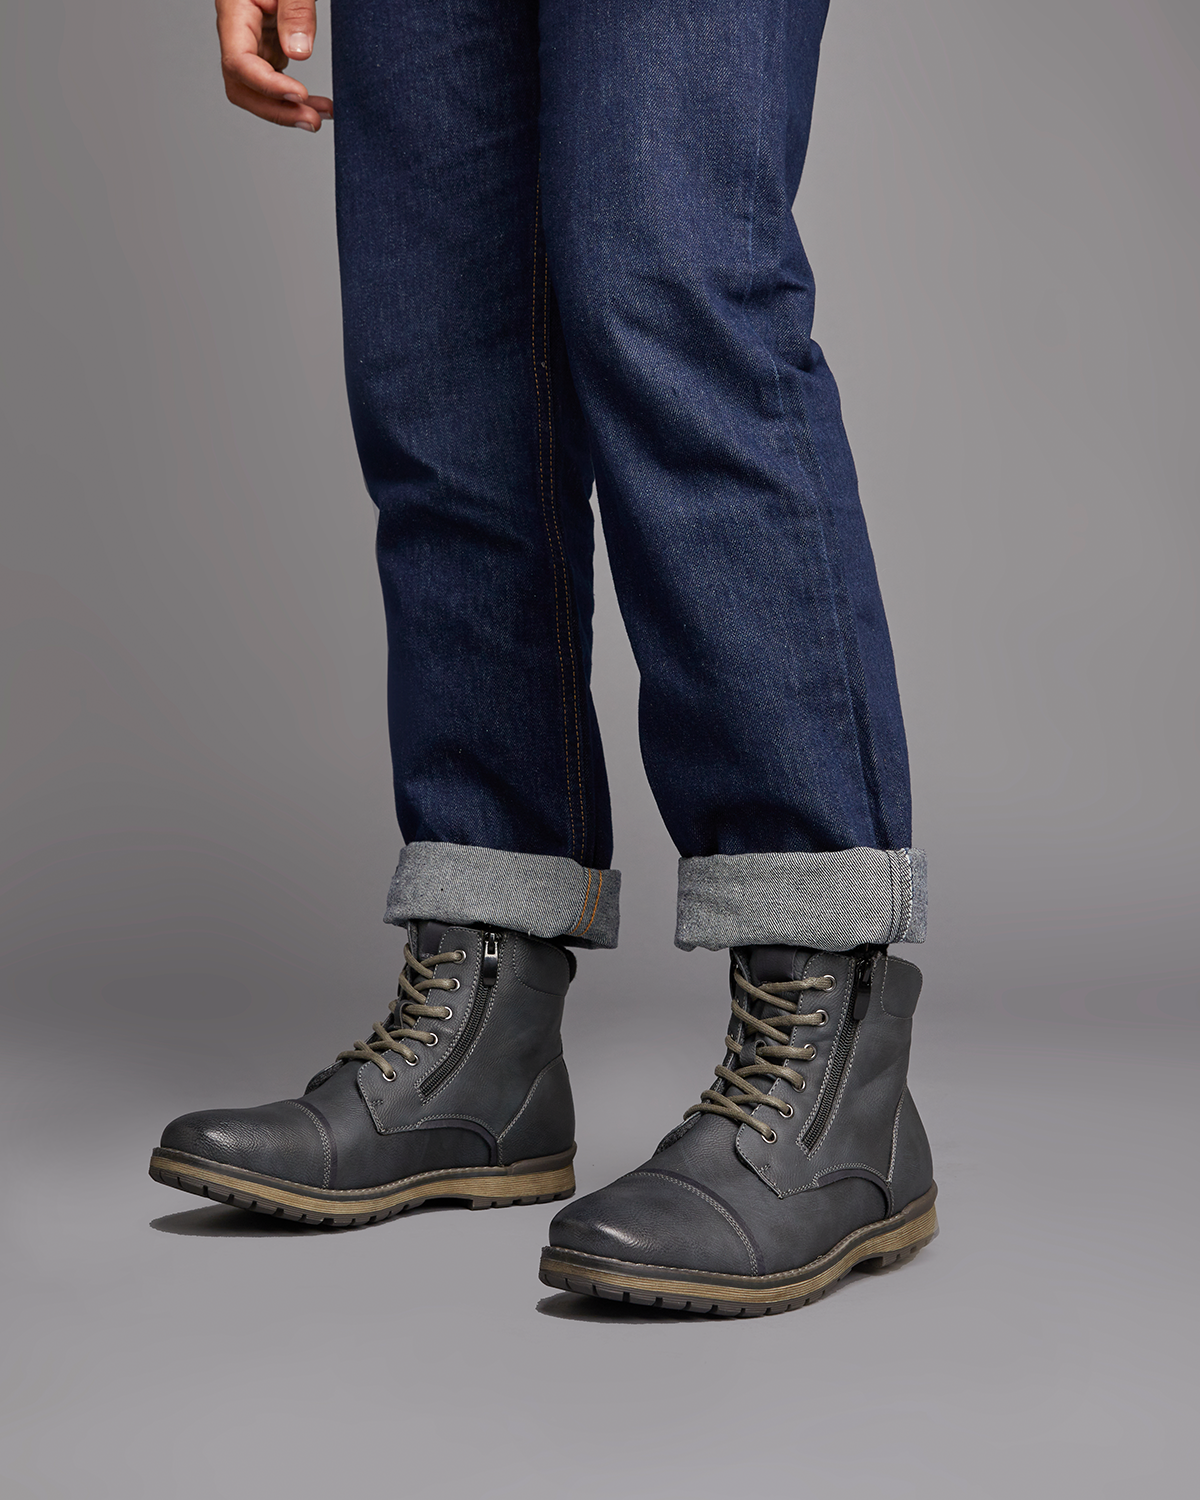 Uncut Shoes Marlboro Black | Men's Boot | Combat Boot | Lace Up